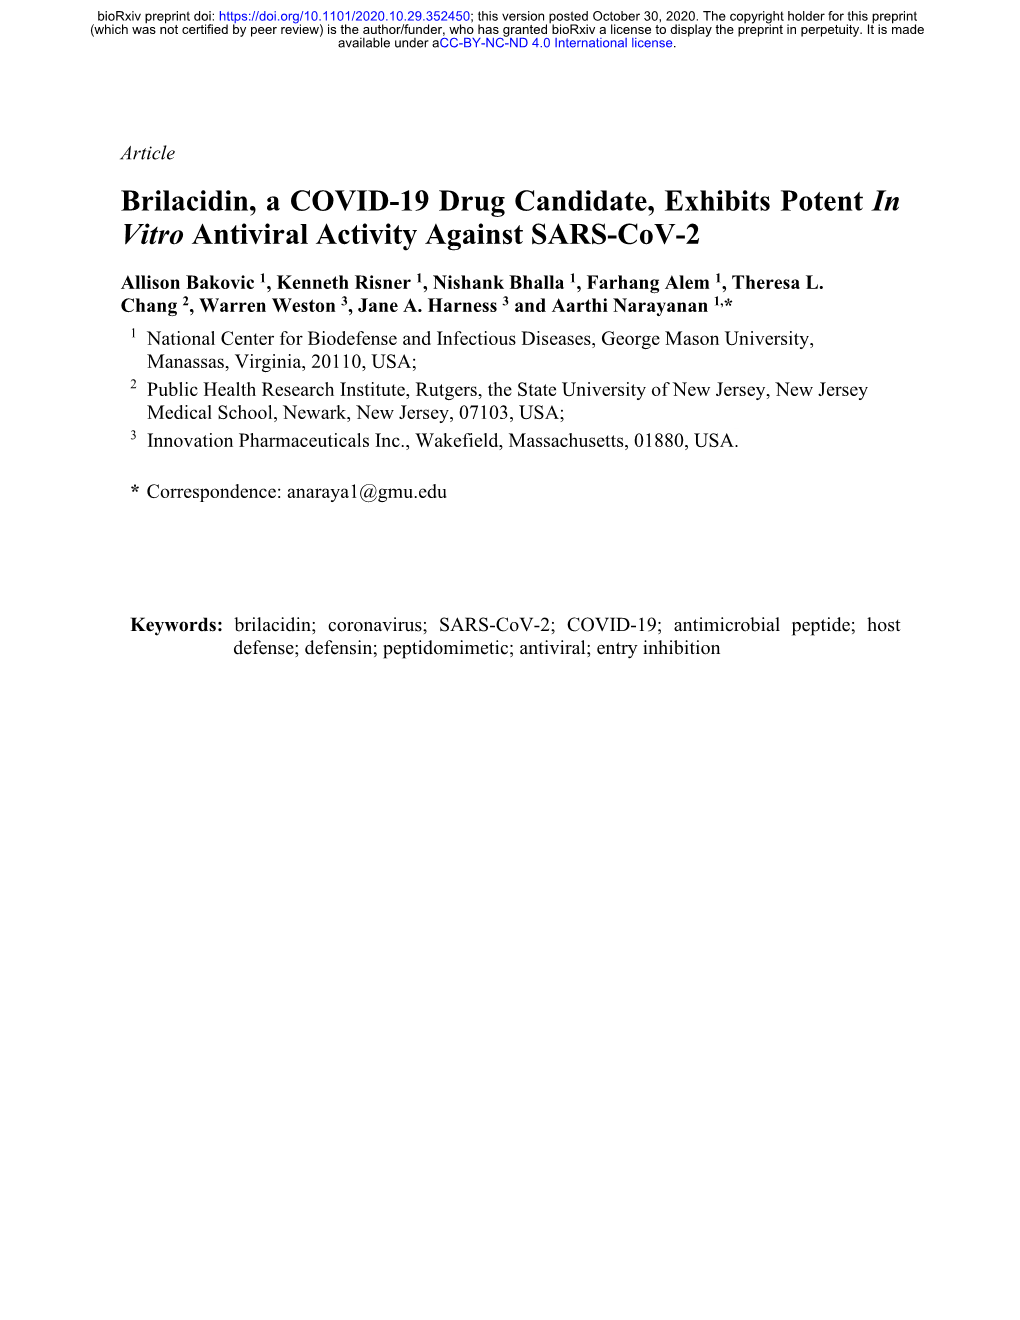 Brilacidin, a COVID-19 Drug Candidate, Exhibits Potent in Vitro Antiviral Activity Against SARS-Cov-2